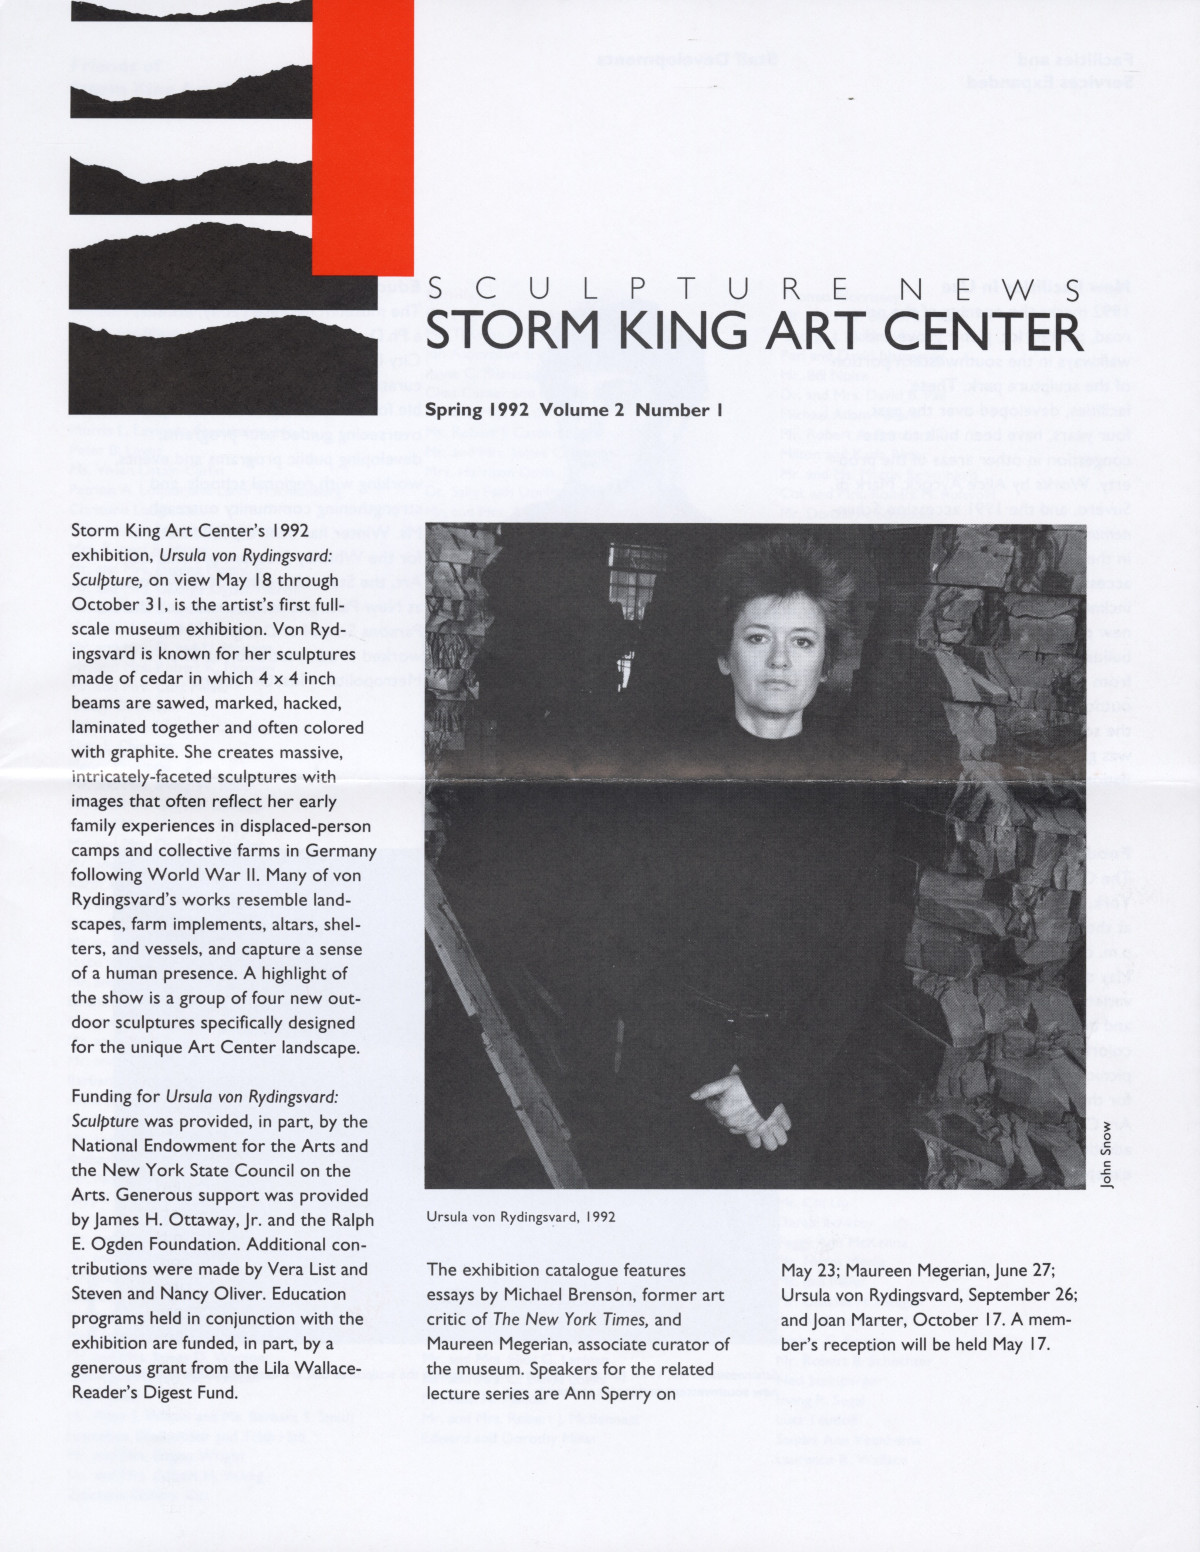 Storm King Art Center Newsletter, Spring 1992